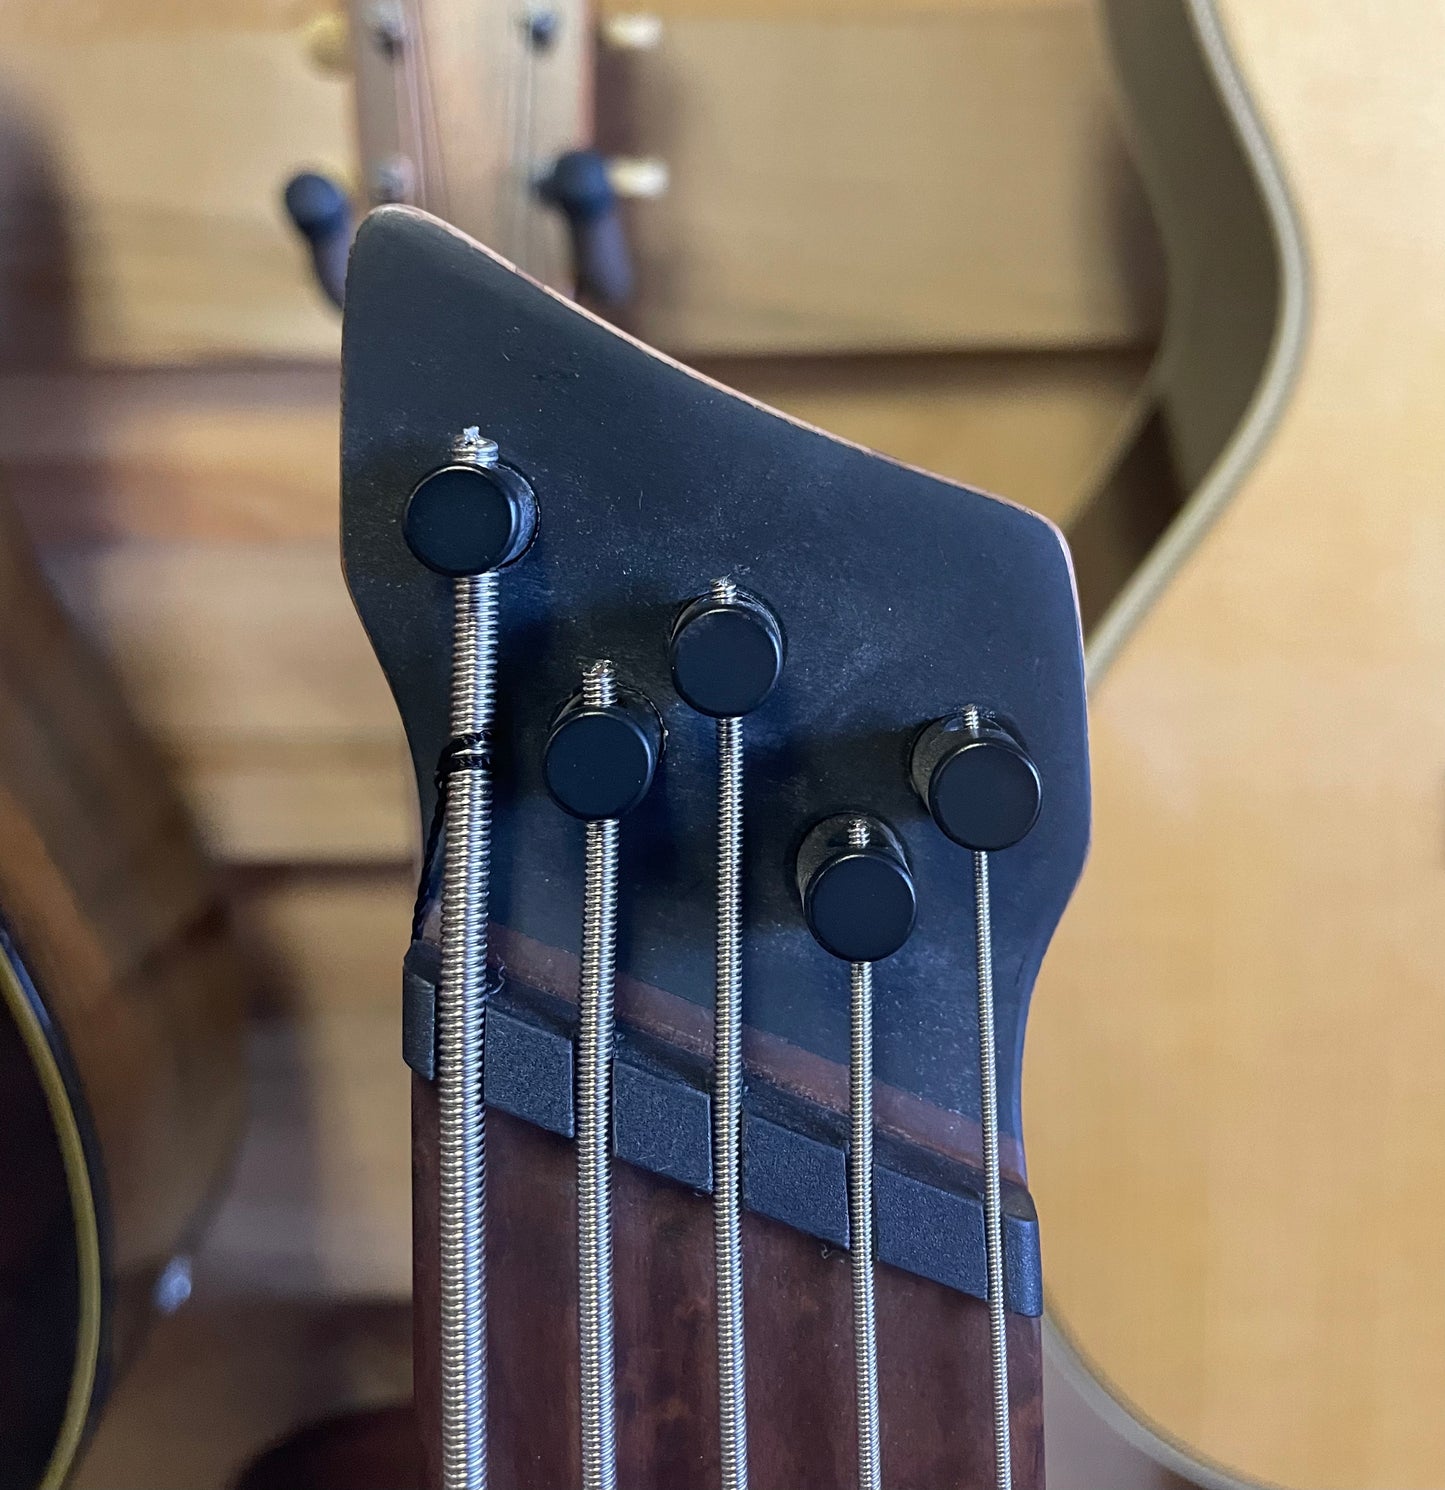 Ibanez Bass Workshop EHB1005SMS Bass Guitar - Metallic Gray Matte (NEW)